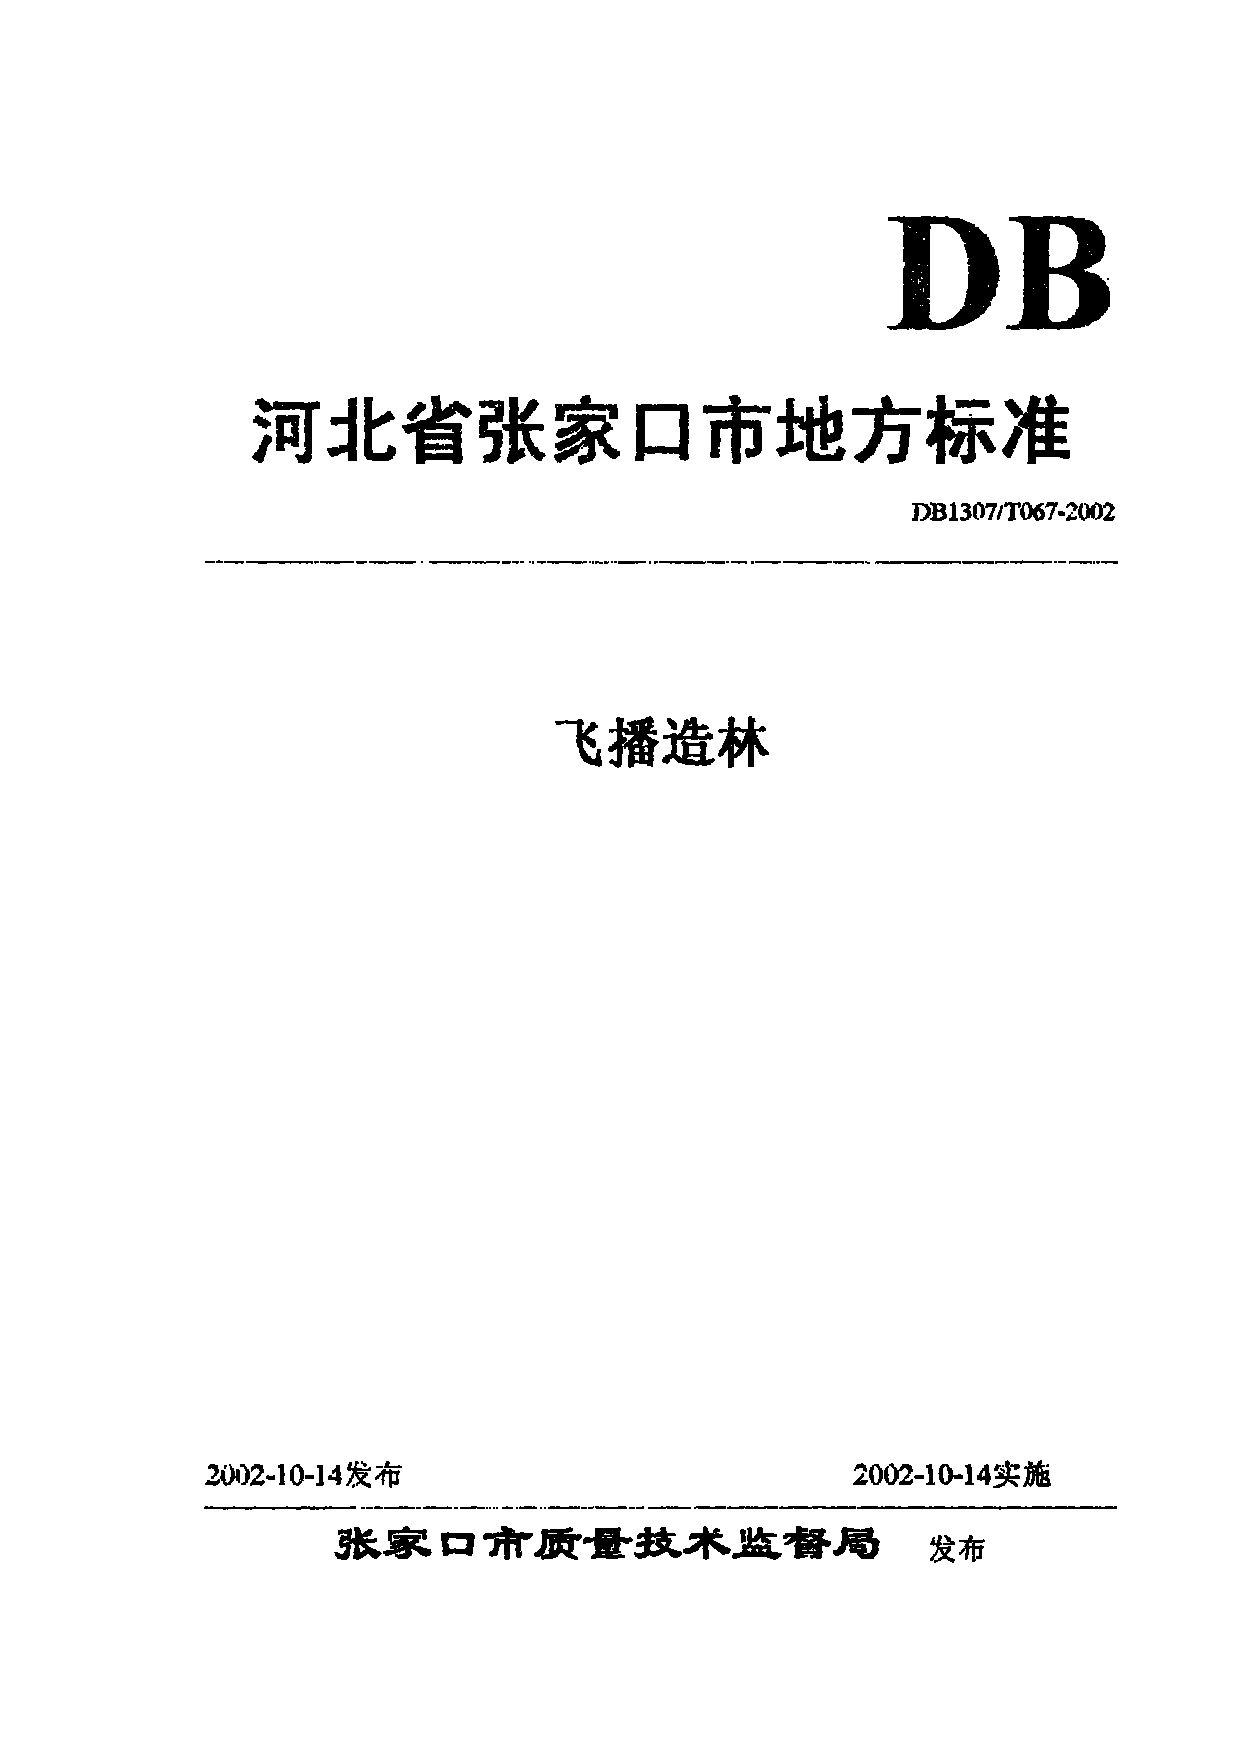 DB1307/T 067-2002封面图